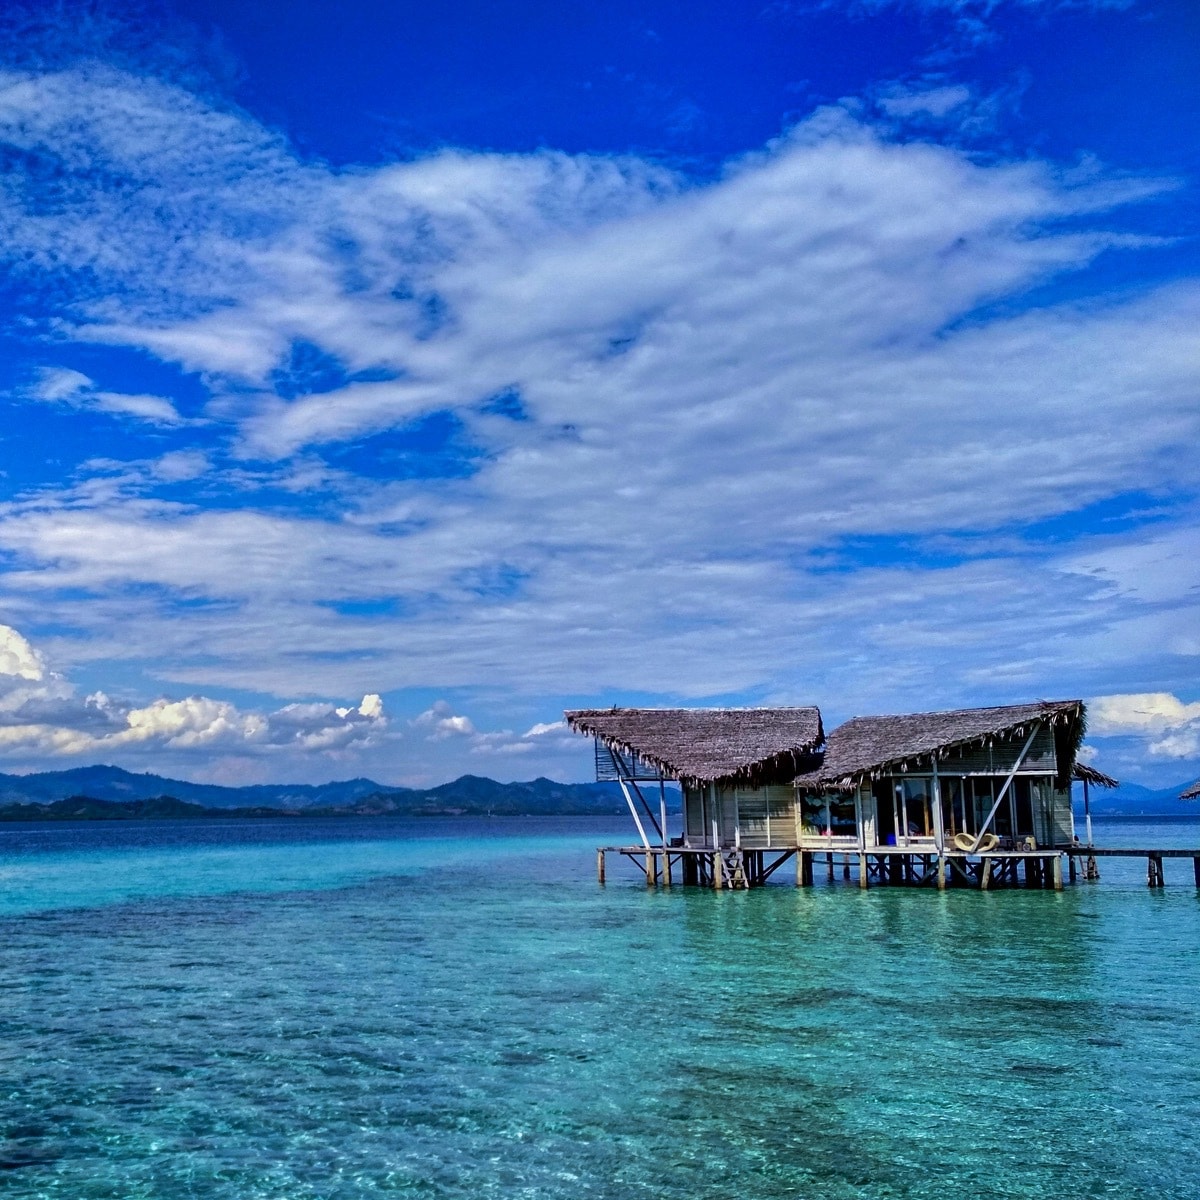 Gorontalo: Sulawesi's Coastal Gem